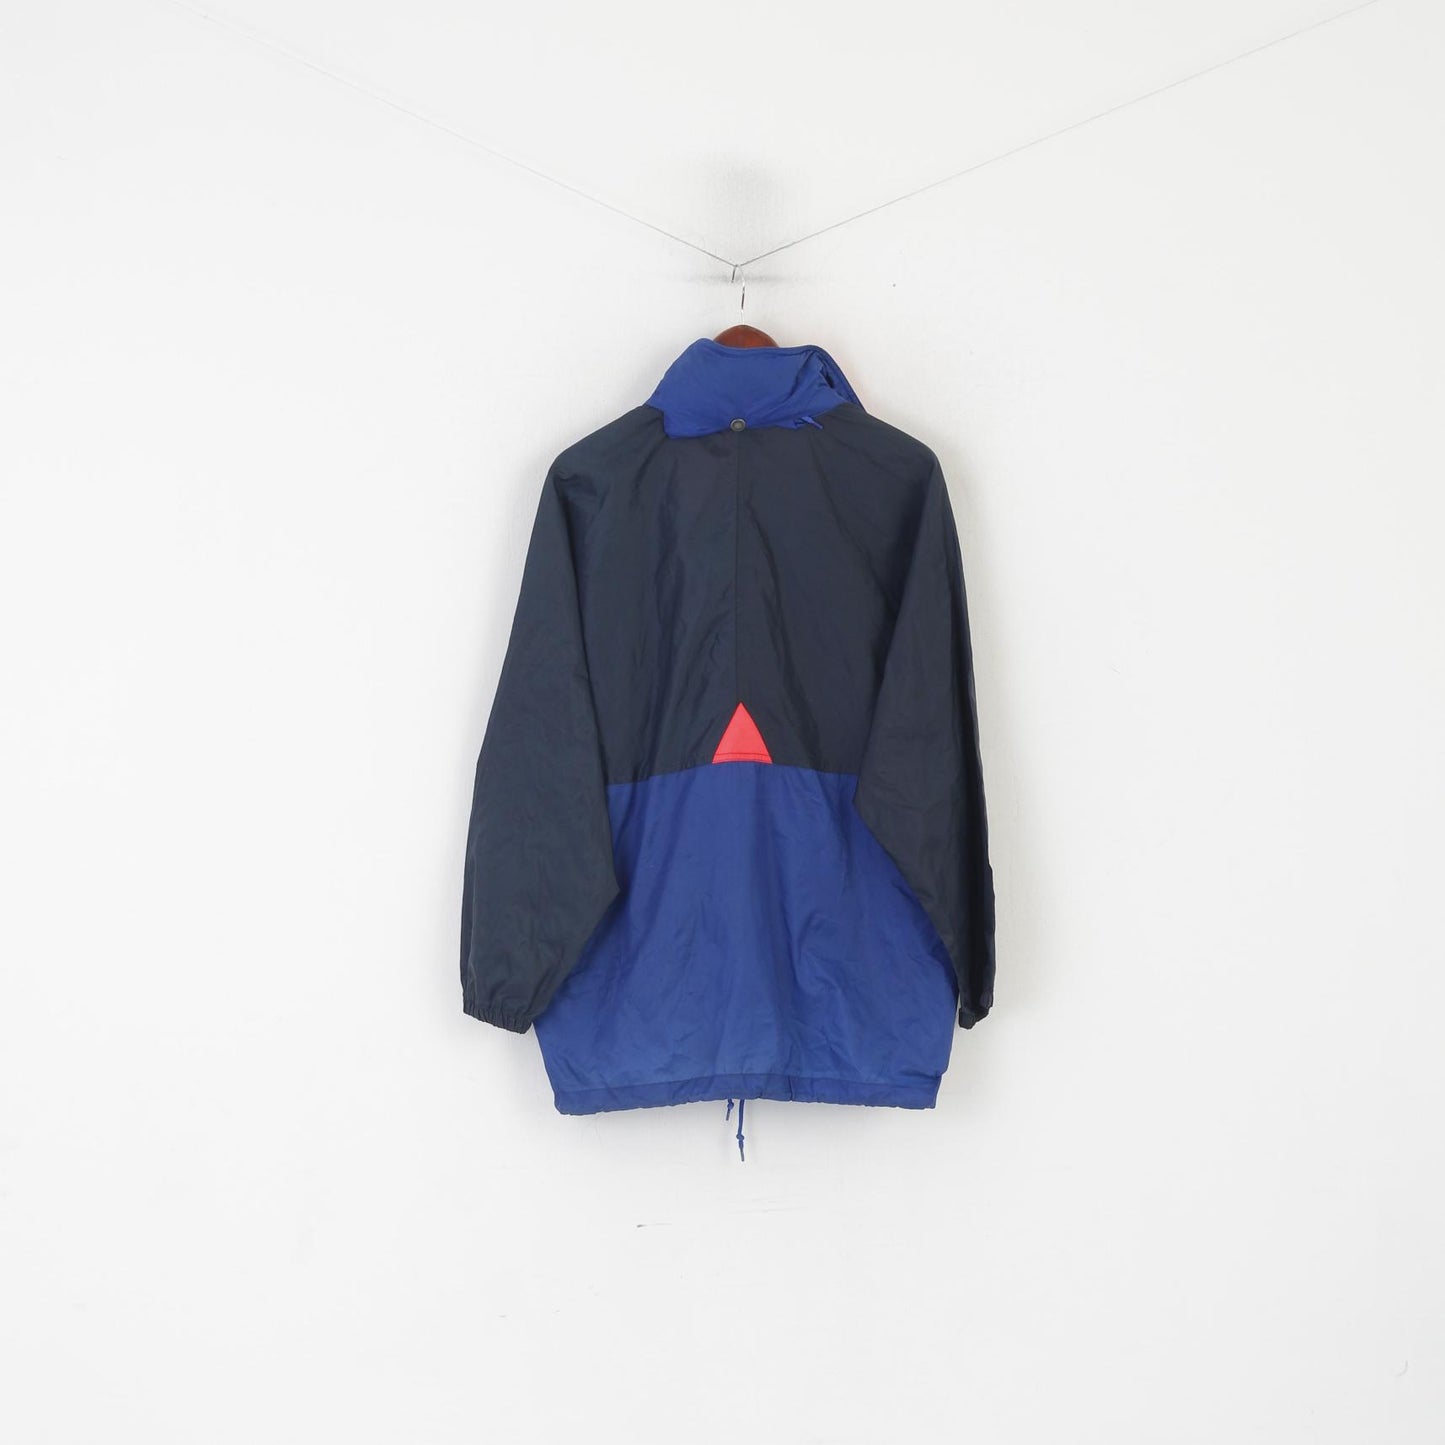 Brugi Men S Jacket Navy Nylon Vintage Waterproof Styled in Italy Hidden Hood Top